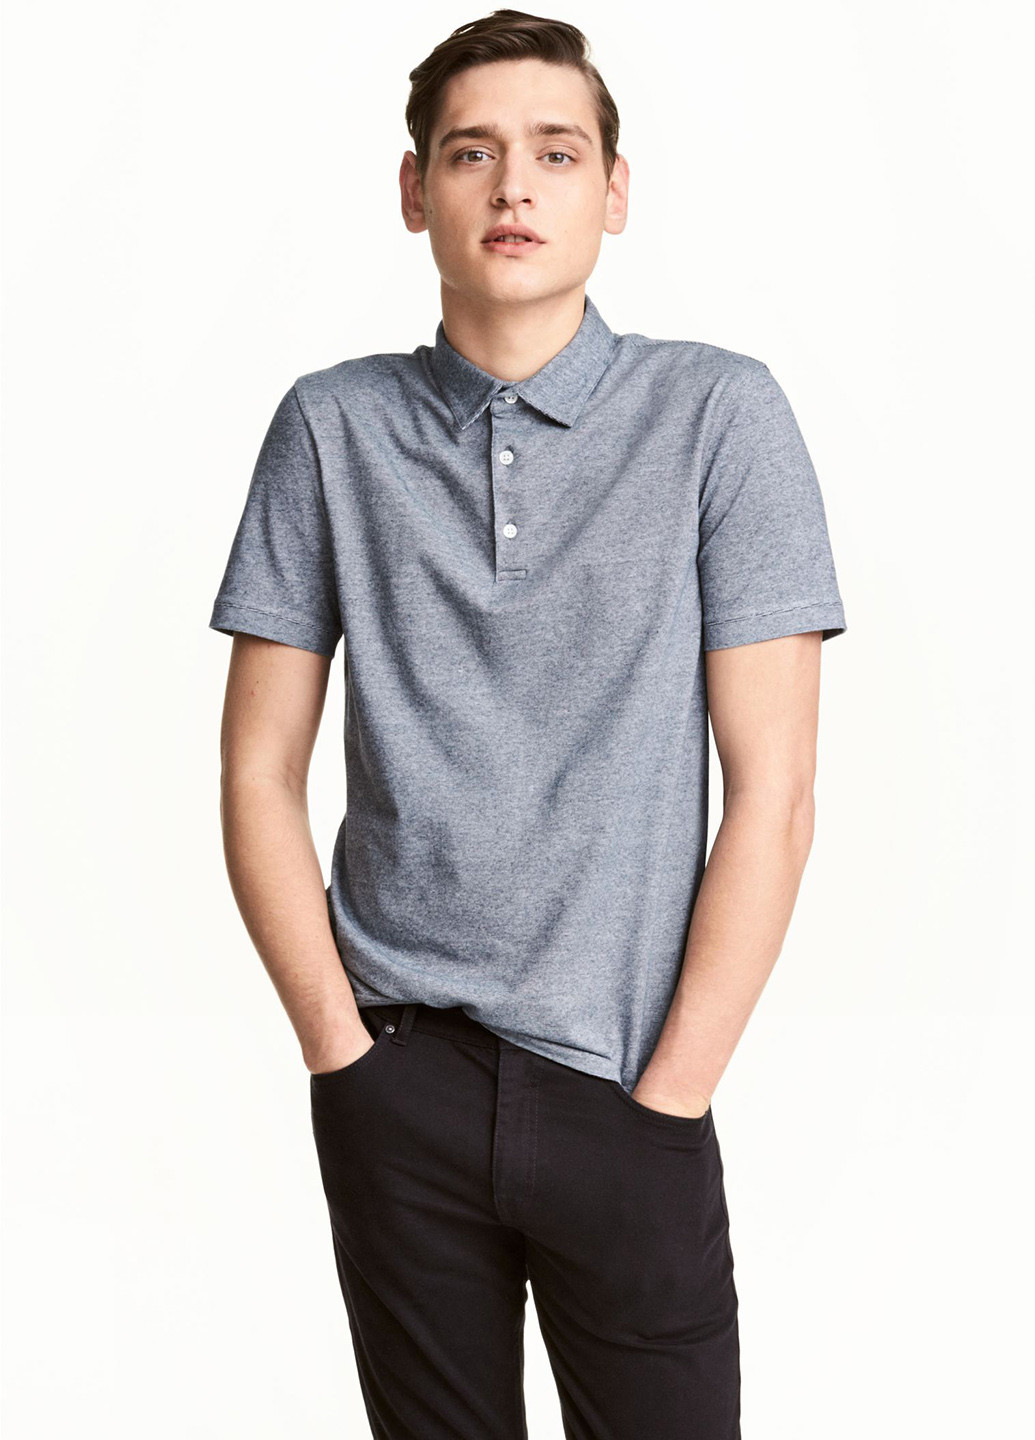 Серо-синяя футболка-поло для мужчин H&M меланжевая